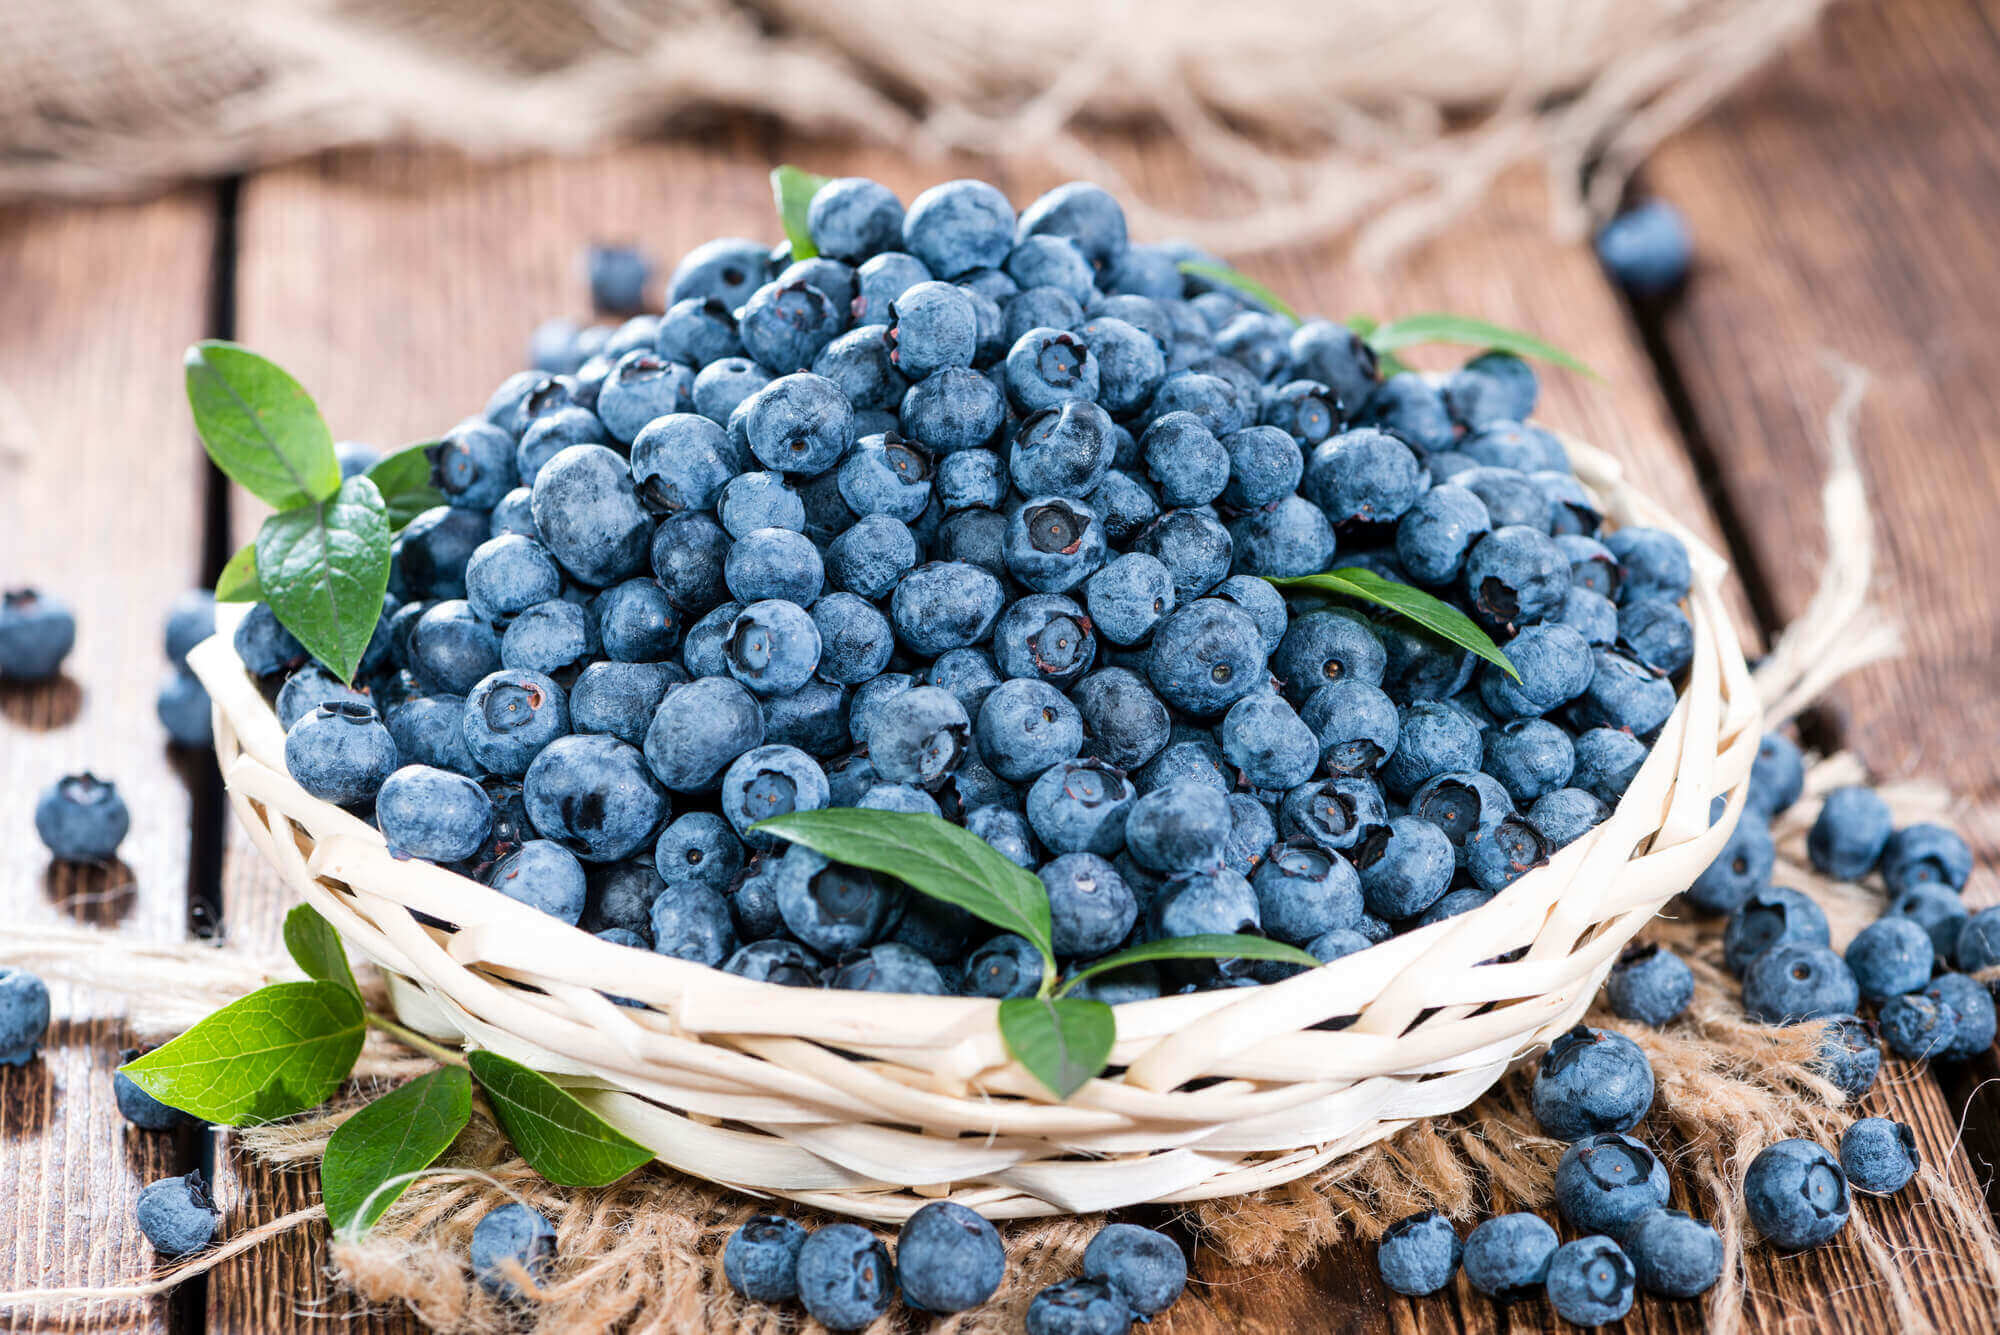 Blueberries as school snacks